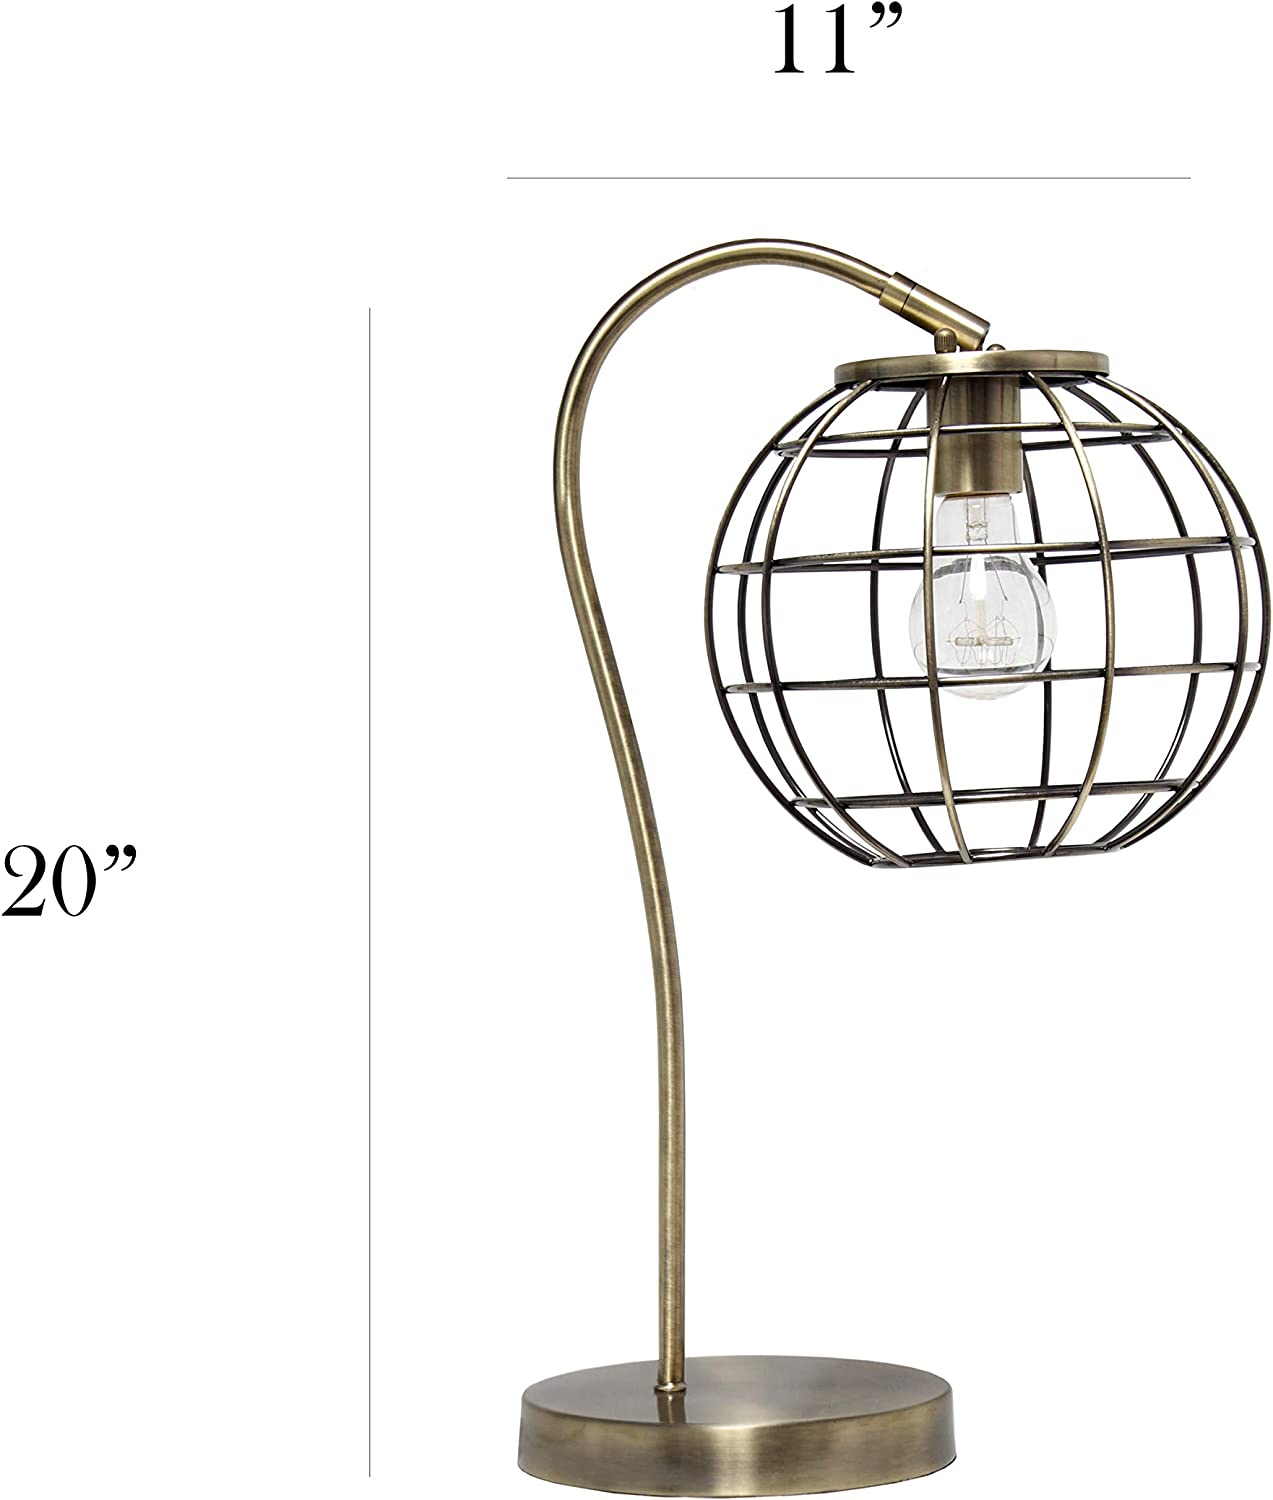 Elegant Designs LT2068-RGD Caged In Metal Table Desk Lamp, Rose Gold